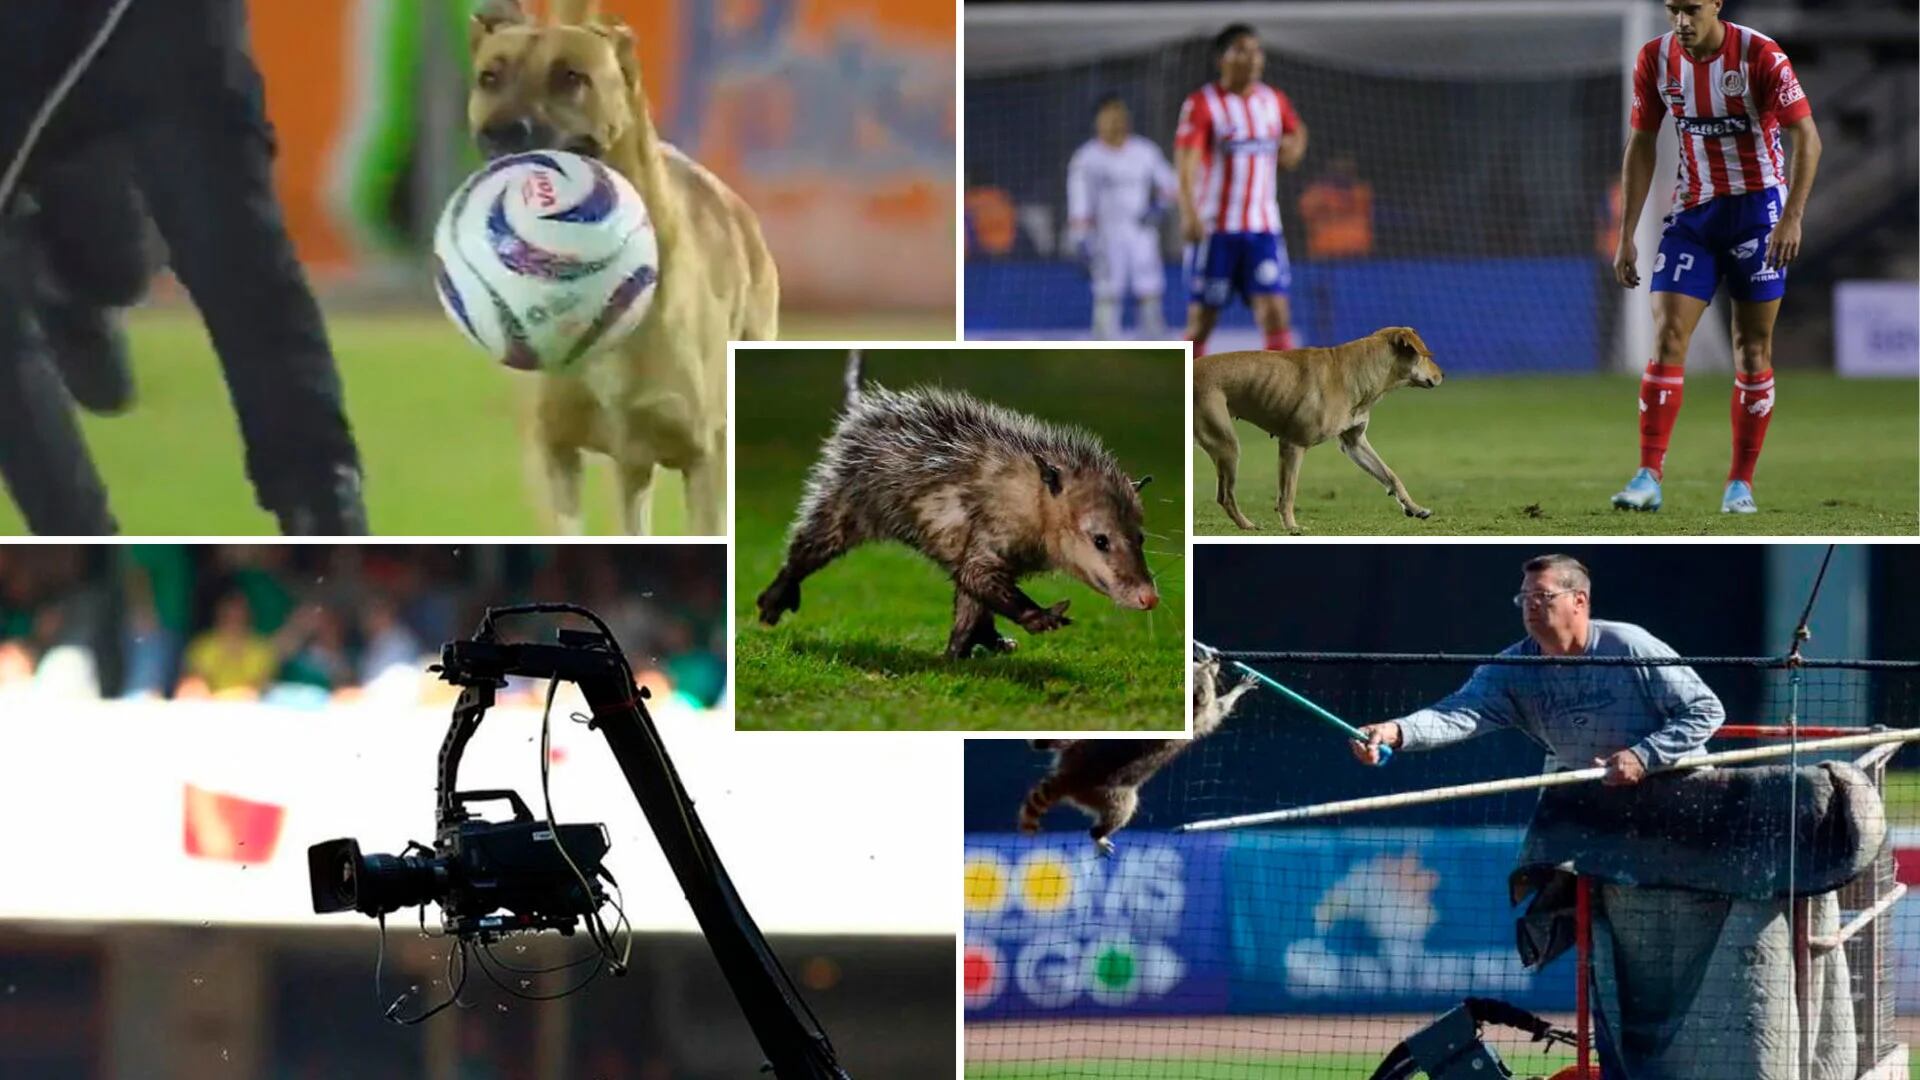 Diferente tipo de animales han invadido las canchas de los estadios en el futbol mexicano.

Foto: Jovani Pérez